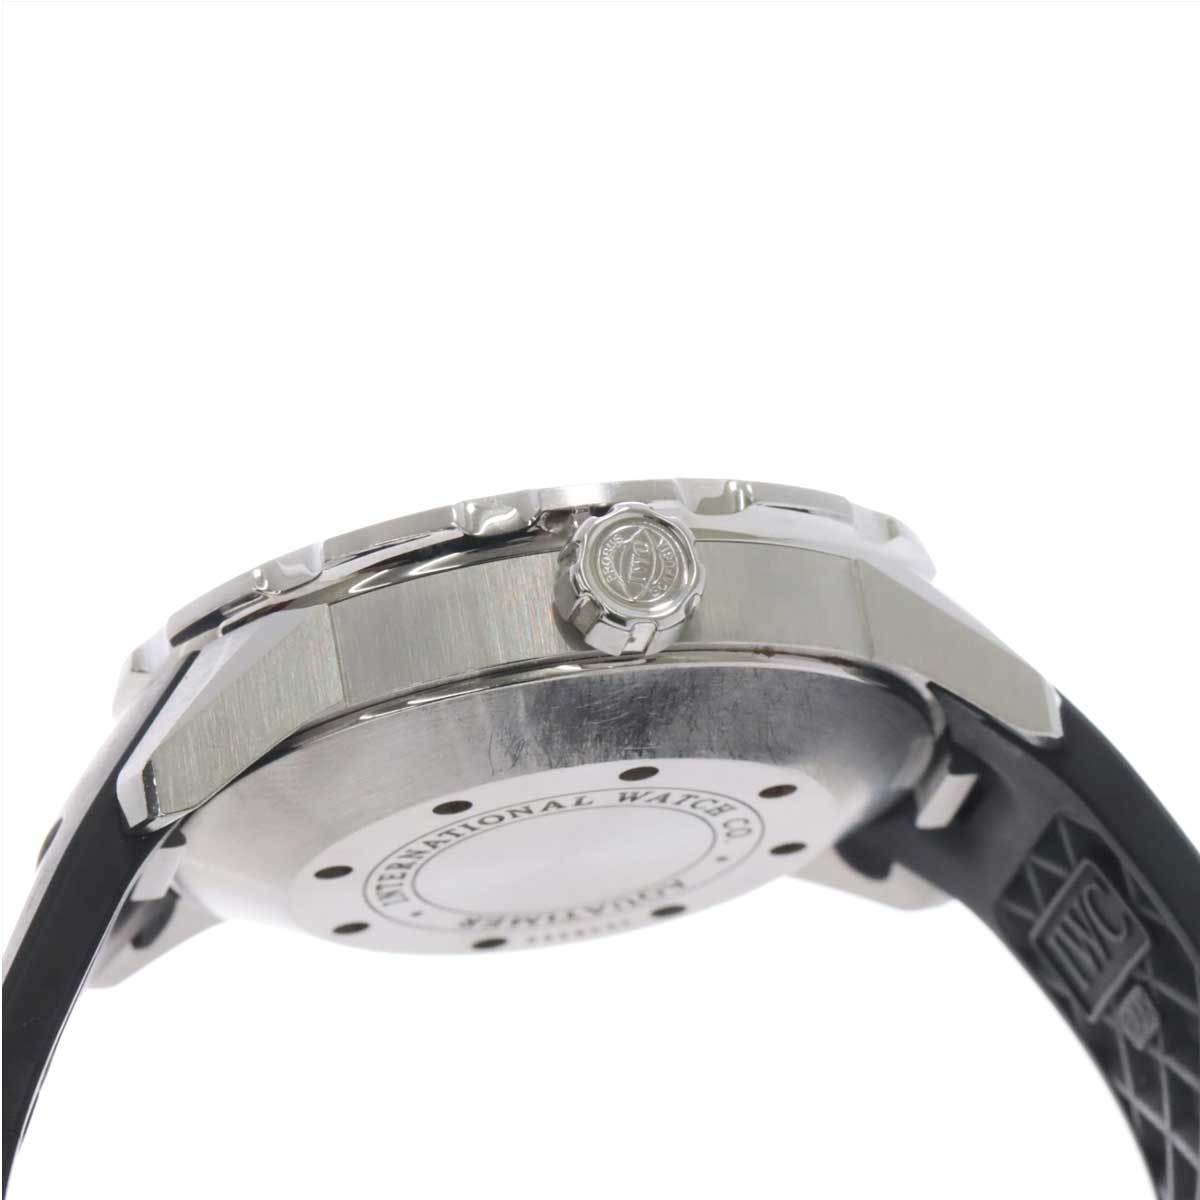 IWC アクアタイマー 2000 IW356806 メンズ 腕時計 デイト 自動巻き インターナショナル ウォッチ カンパニー Aqua Timer 90212616_画像5